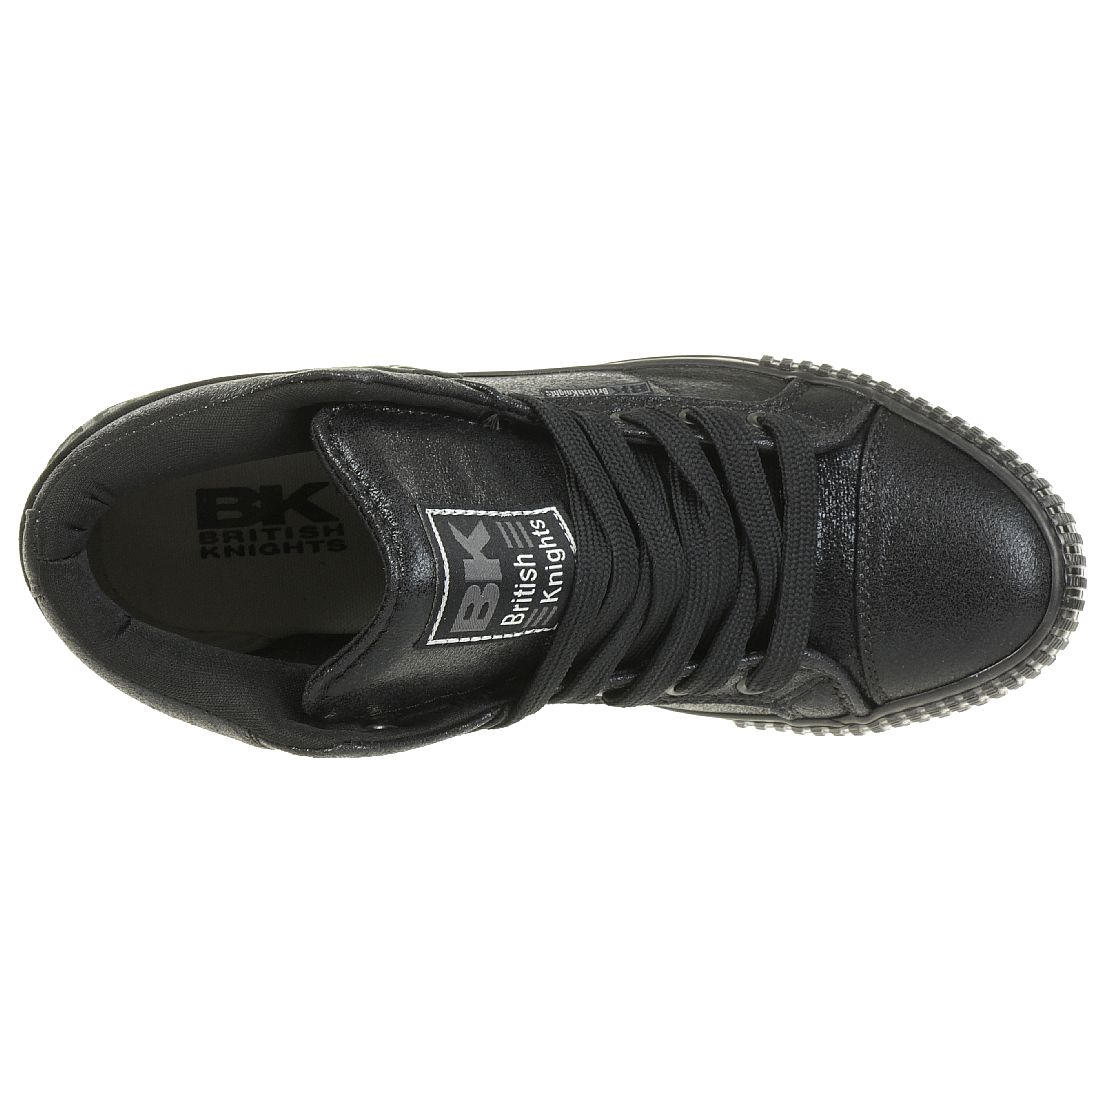 British Knights ROCO BK Damen Sneaker B40-3706-04 schwarz